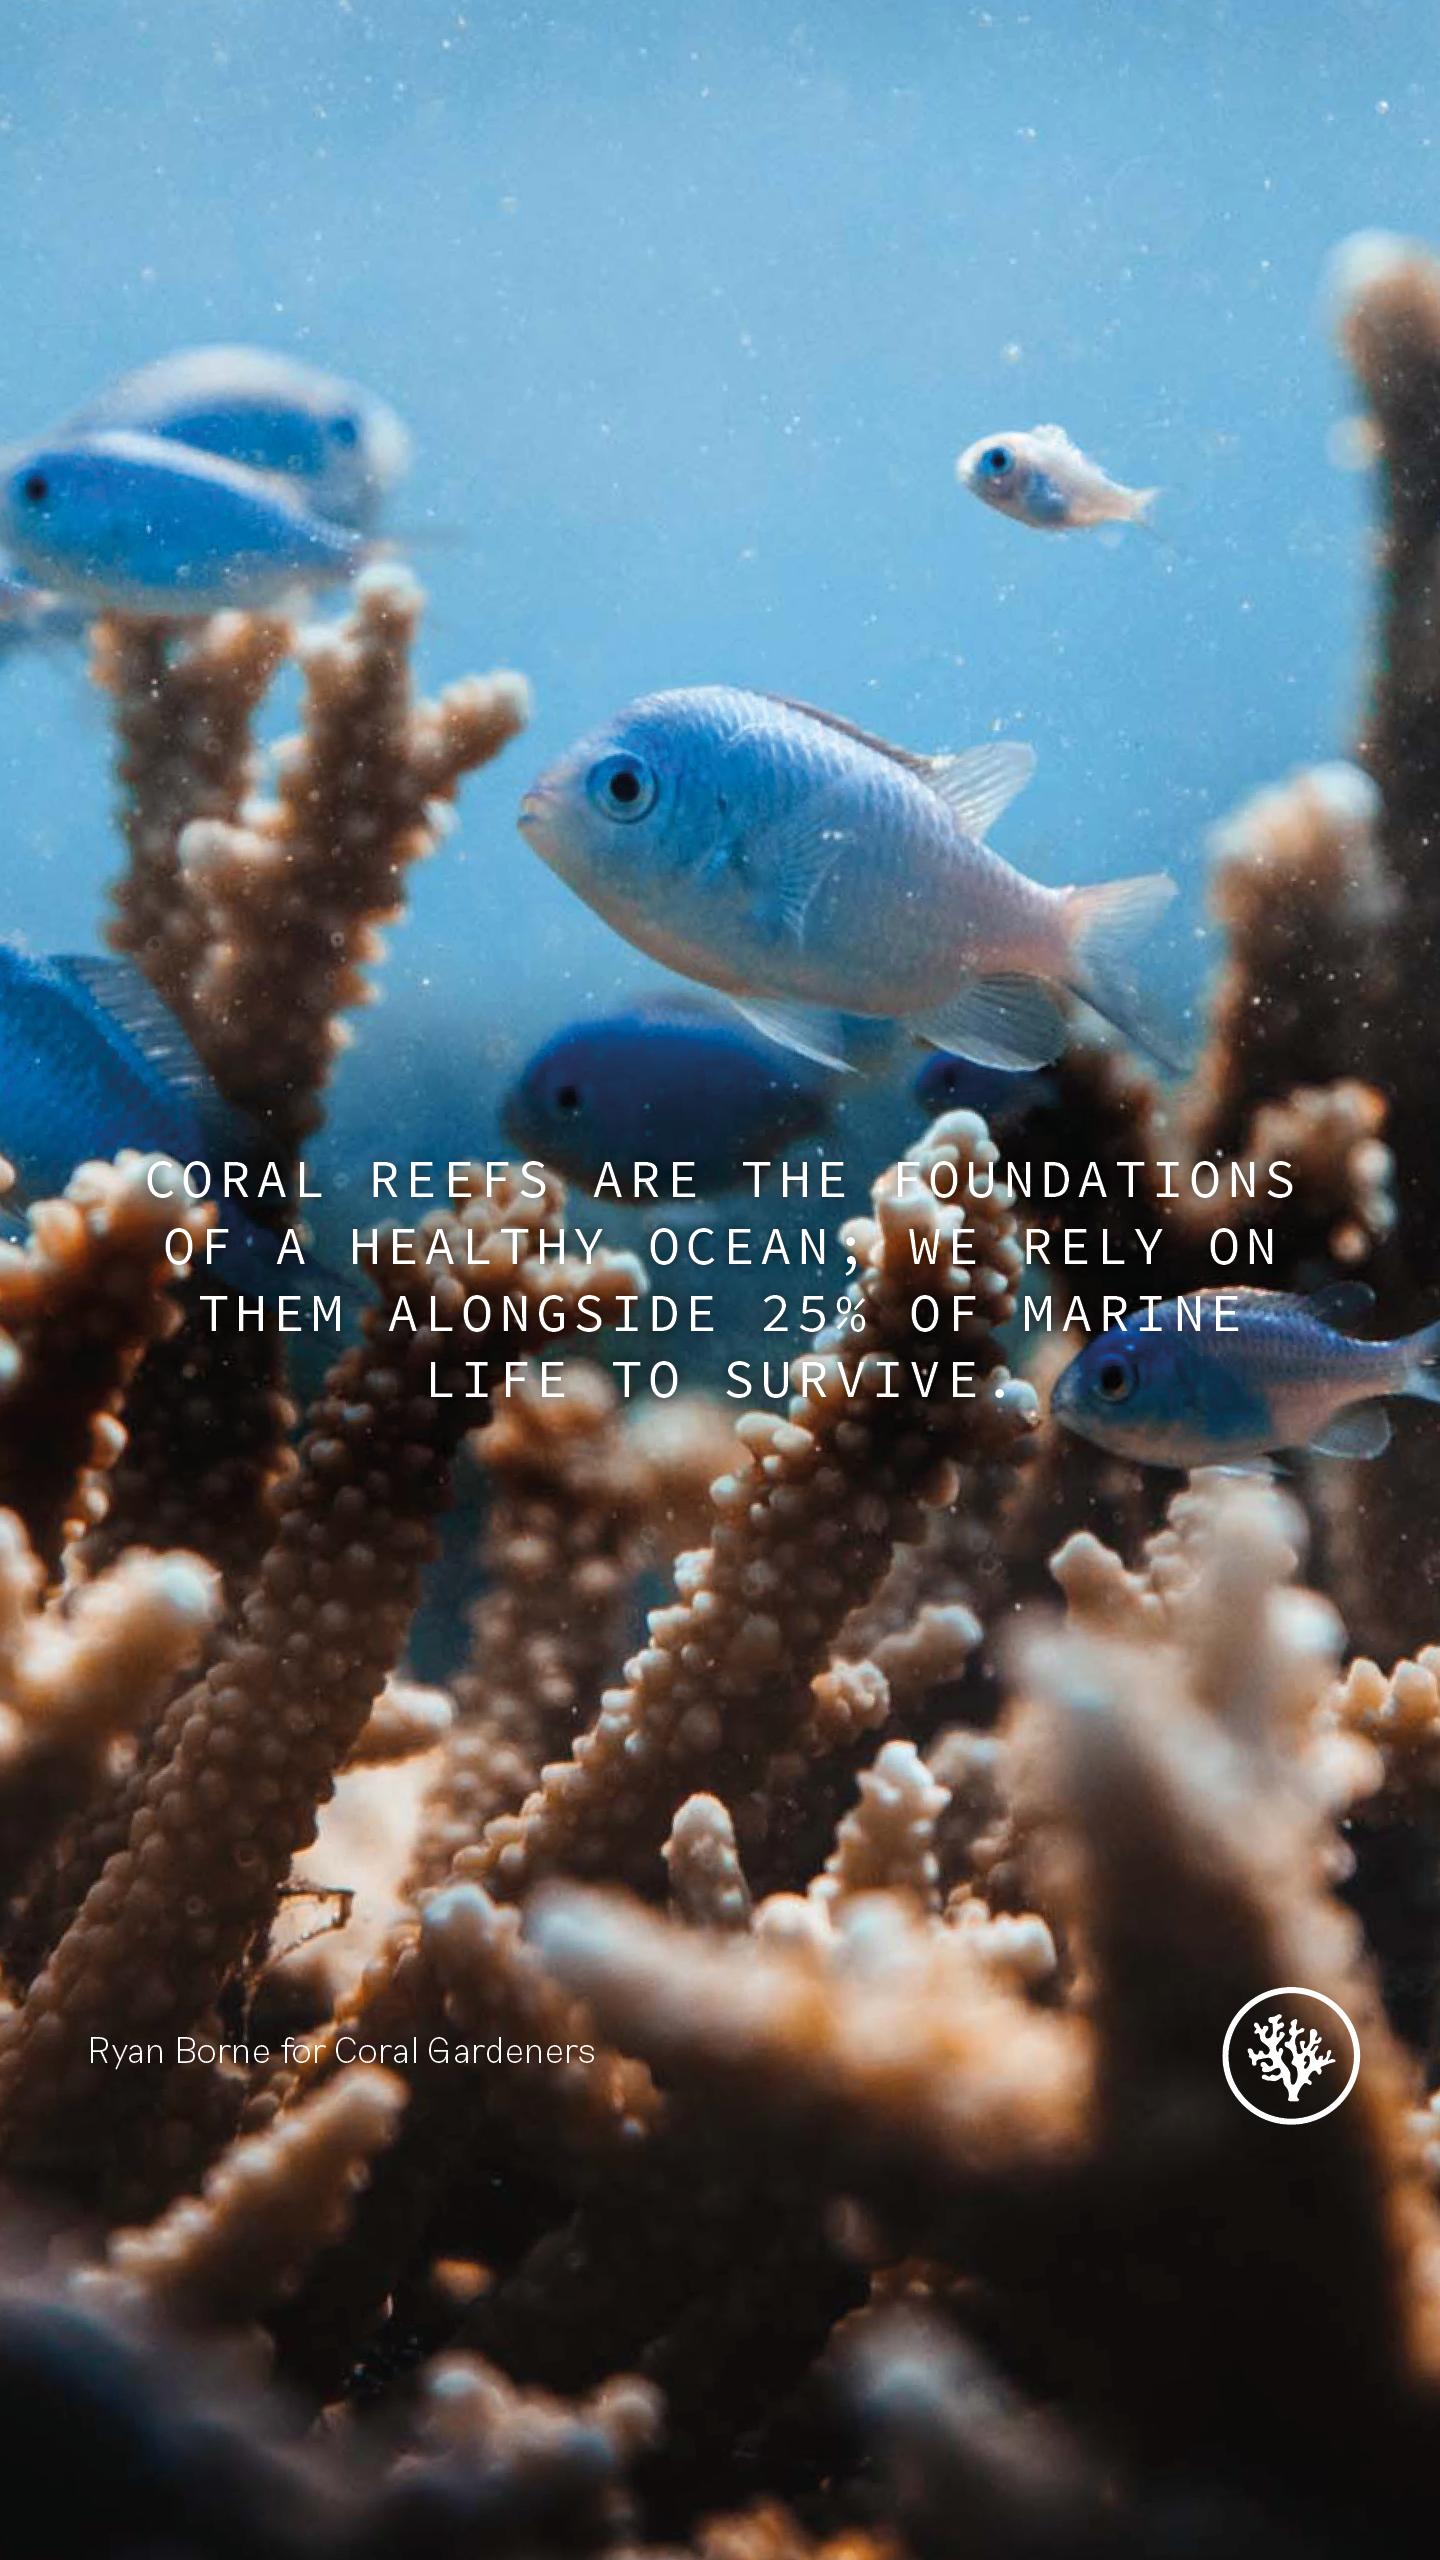 "Les récifs coralliens sont les fondements d'un océan sain. Nous dépendons d'eux ainsi que de 25 % de la vie marine pour survivre". [coralgardeners.org]